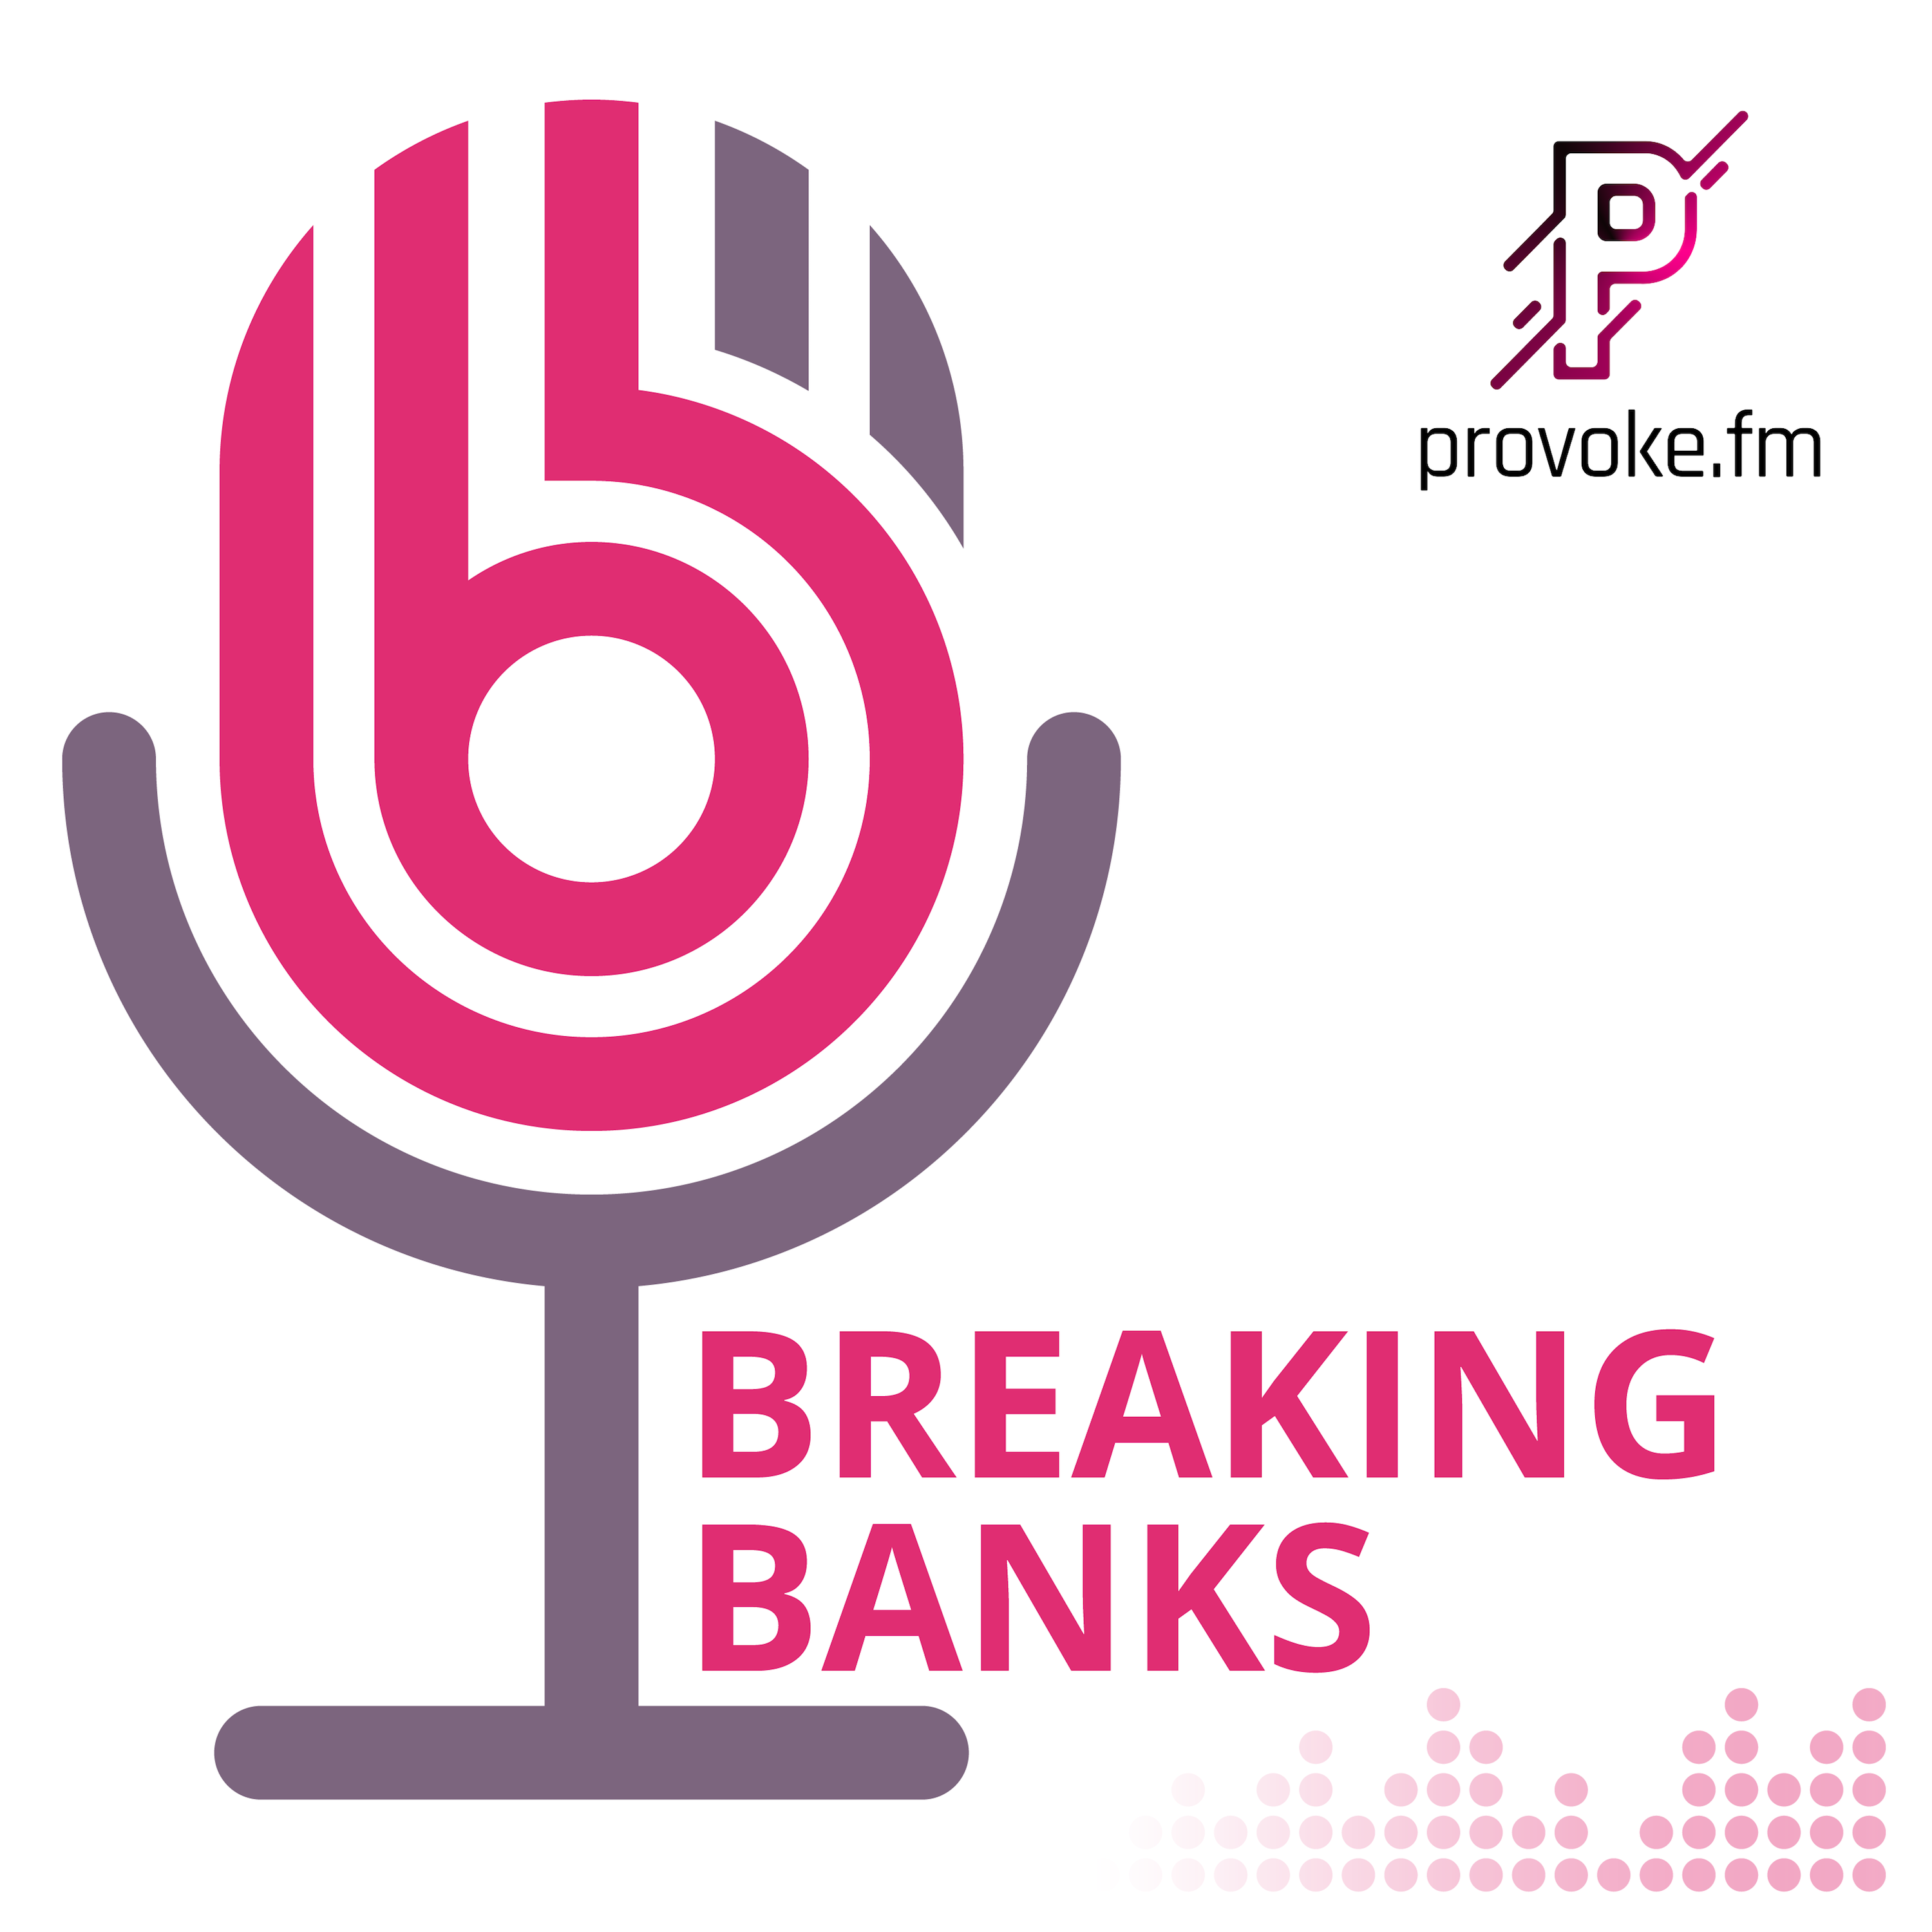 Breaking Banks - Provoke.fm Media